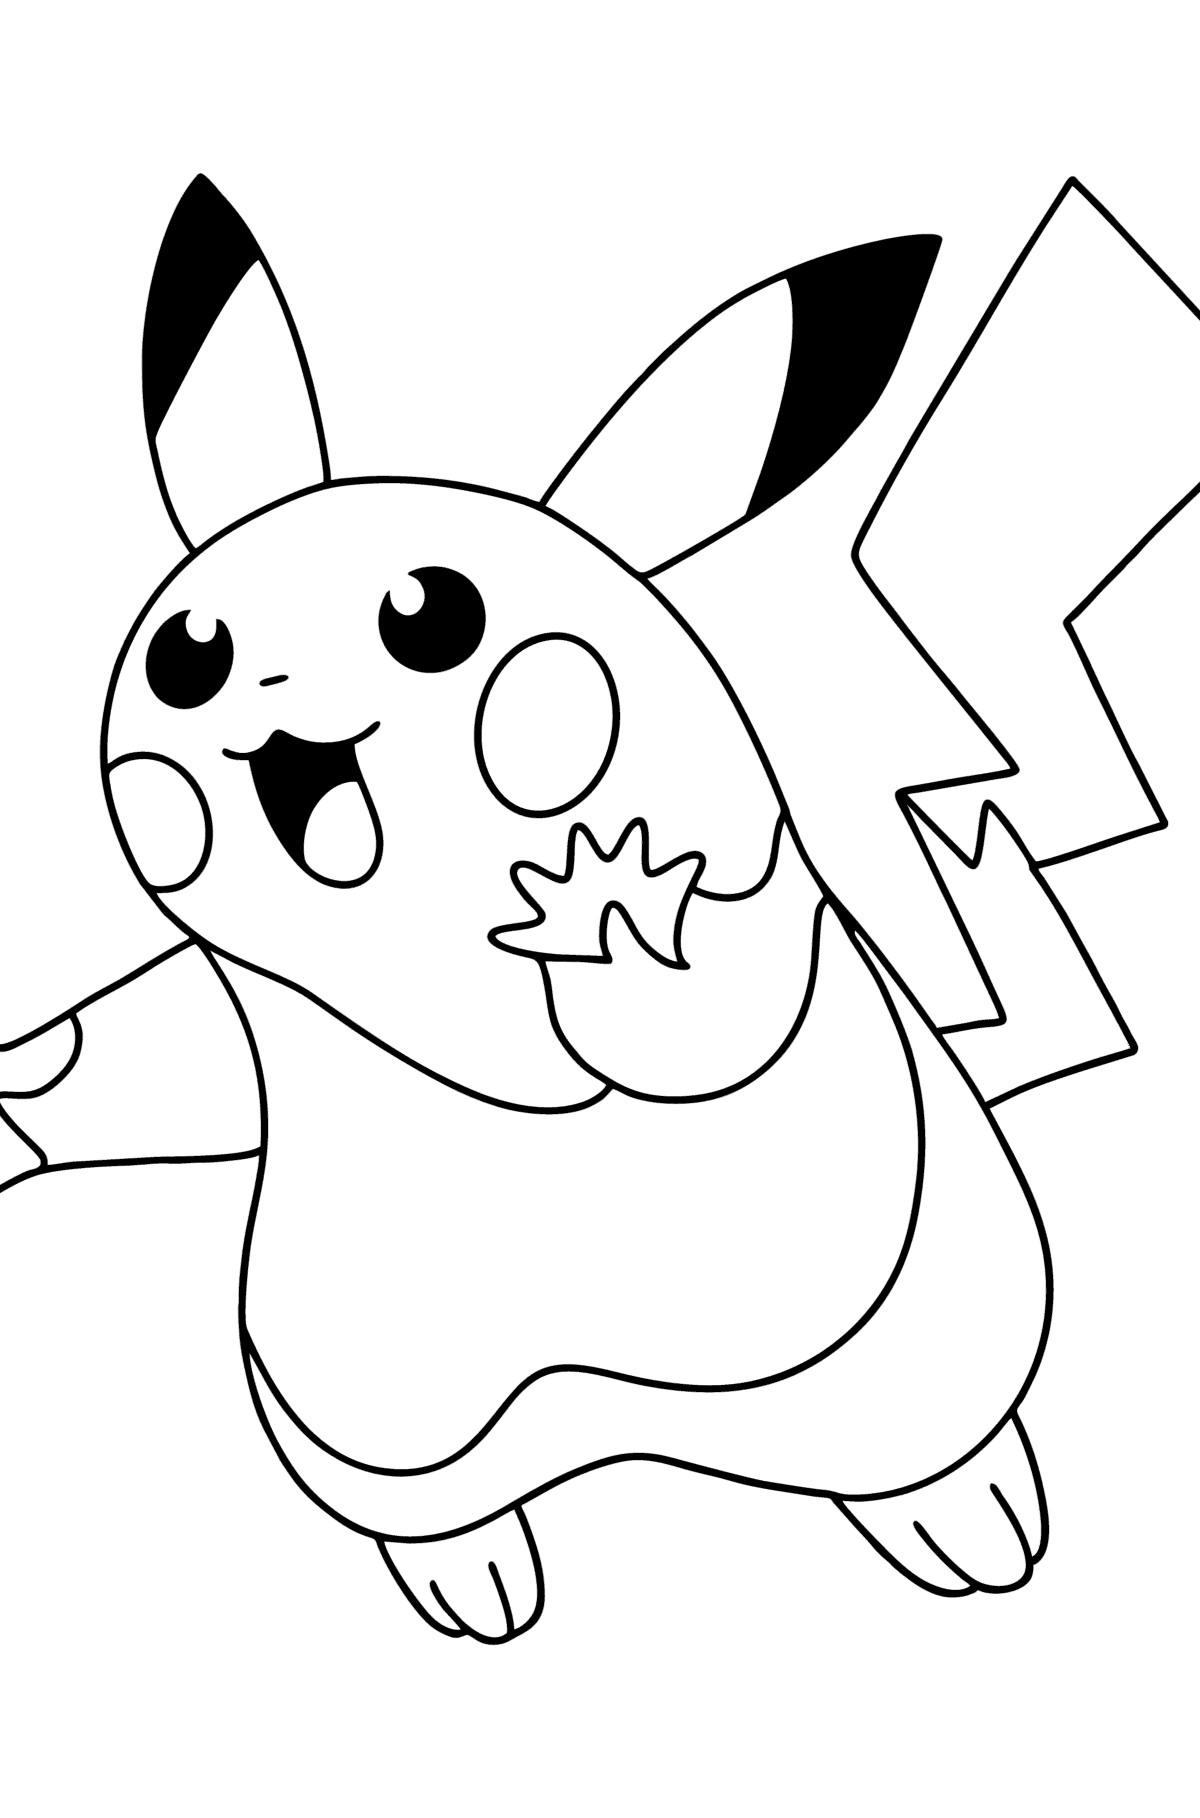 Boyama sayfası Pokémon Go Picachu-go - Boyamalar çocuklar için